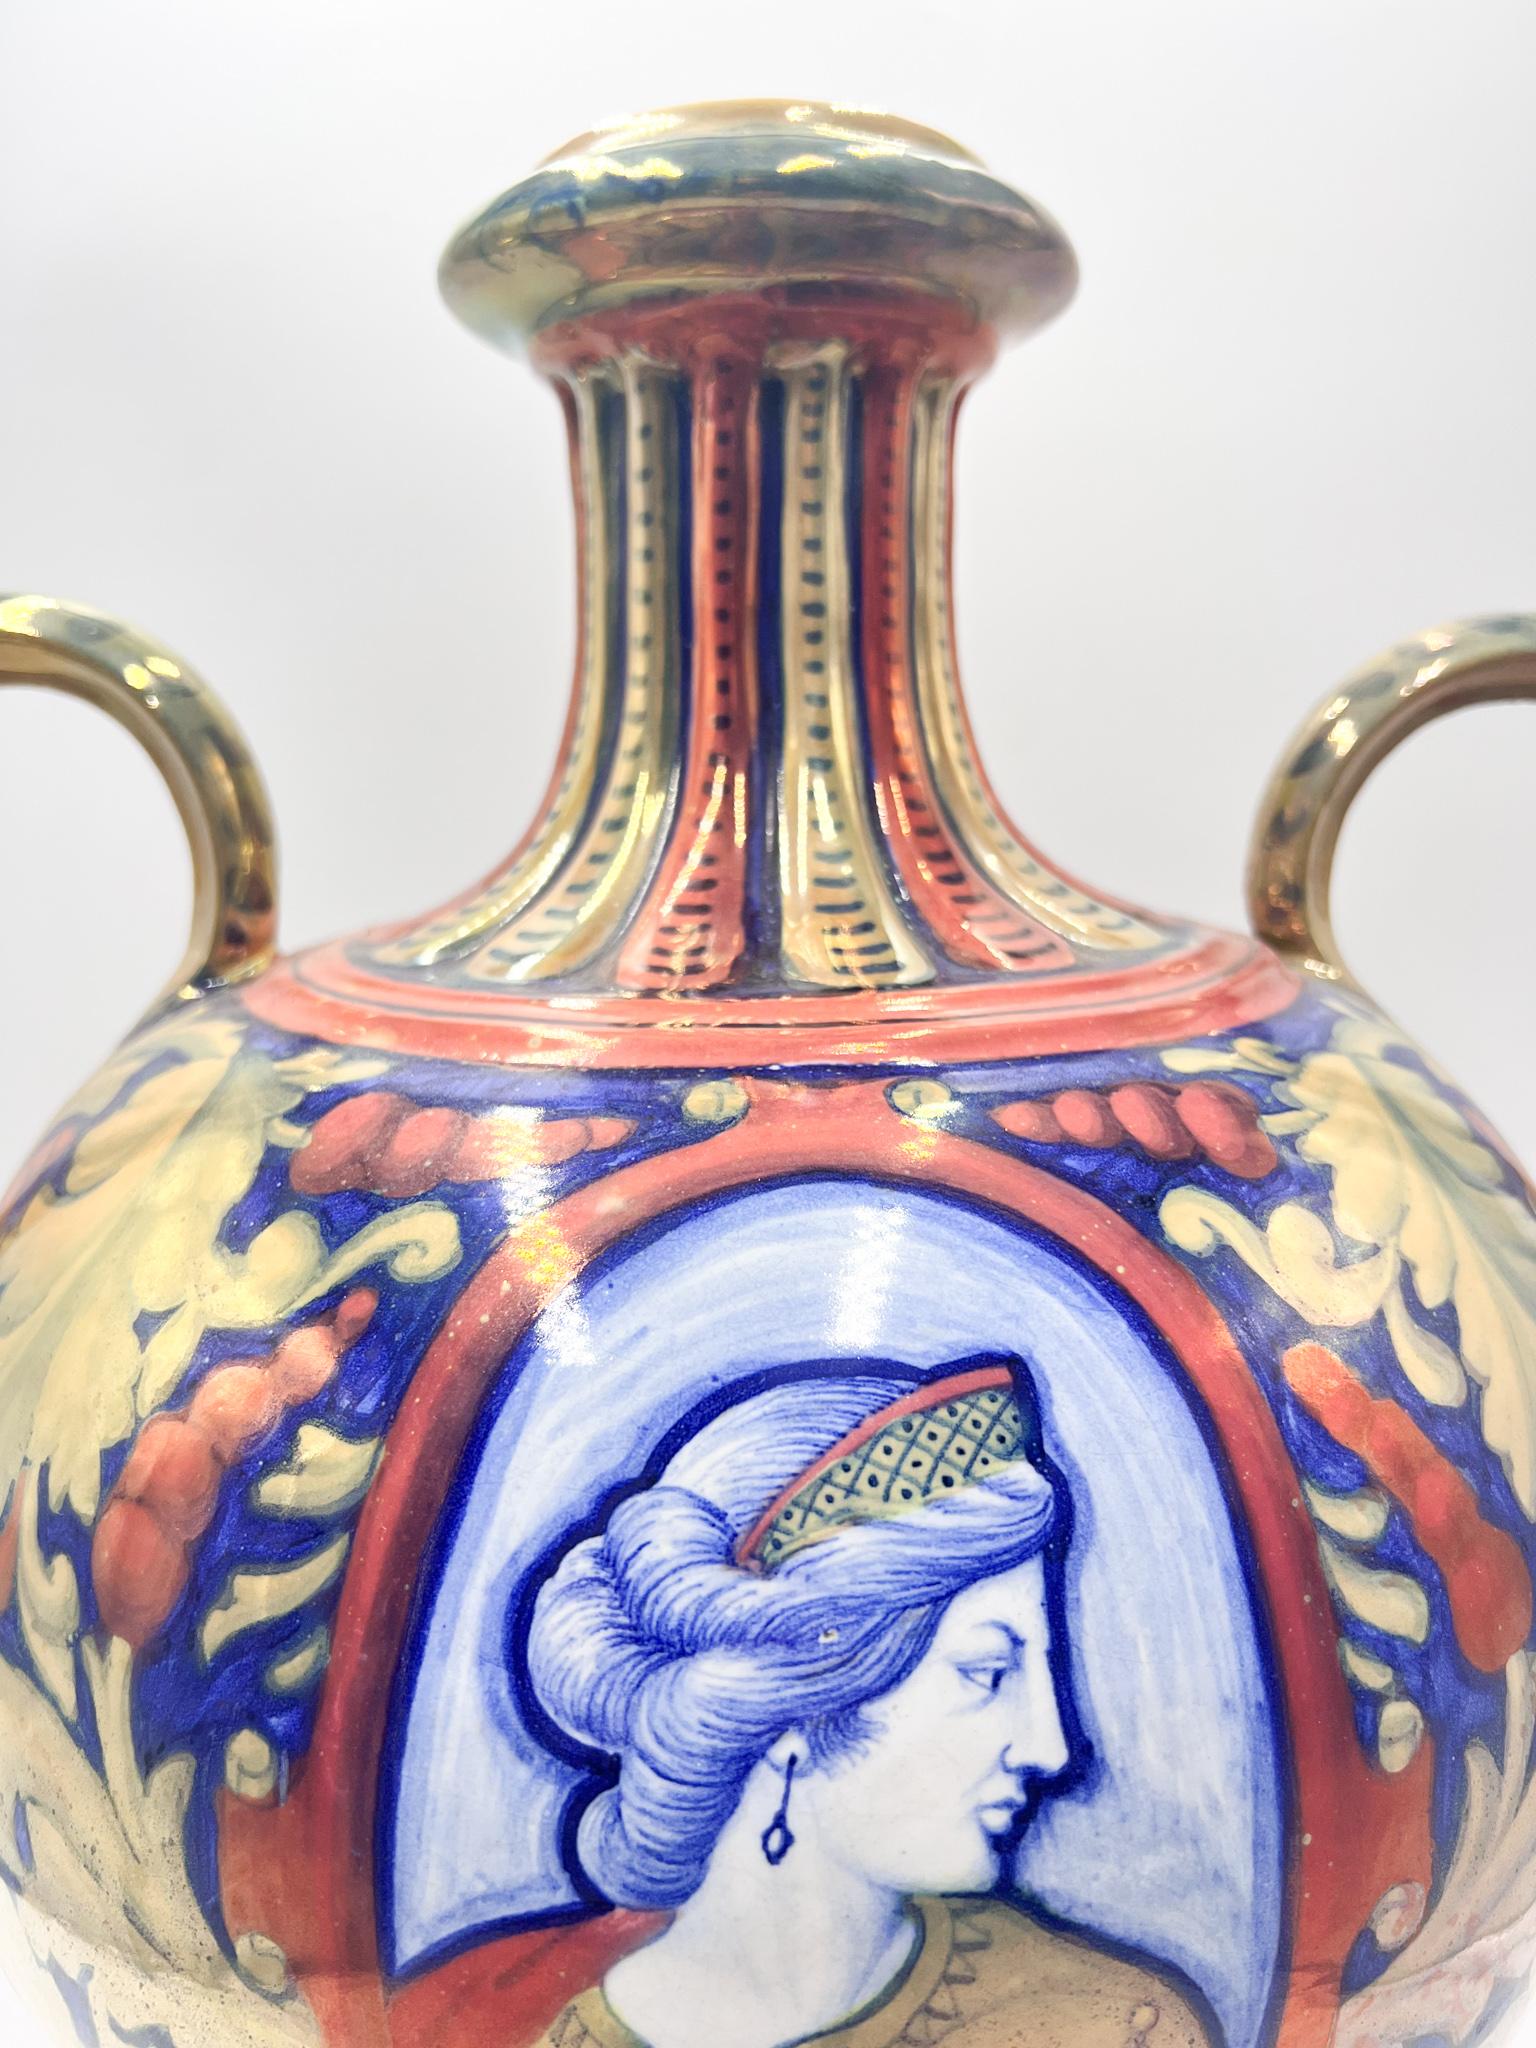 Italian Early 20th Century Ceramic Vase by Gualdo Tadino For Sale